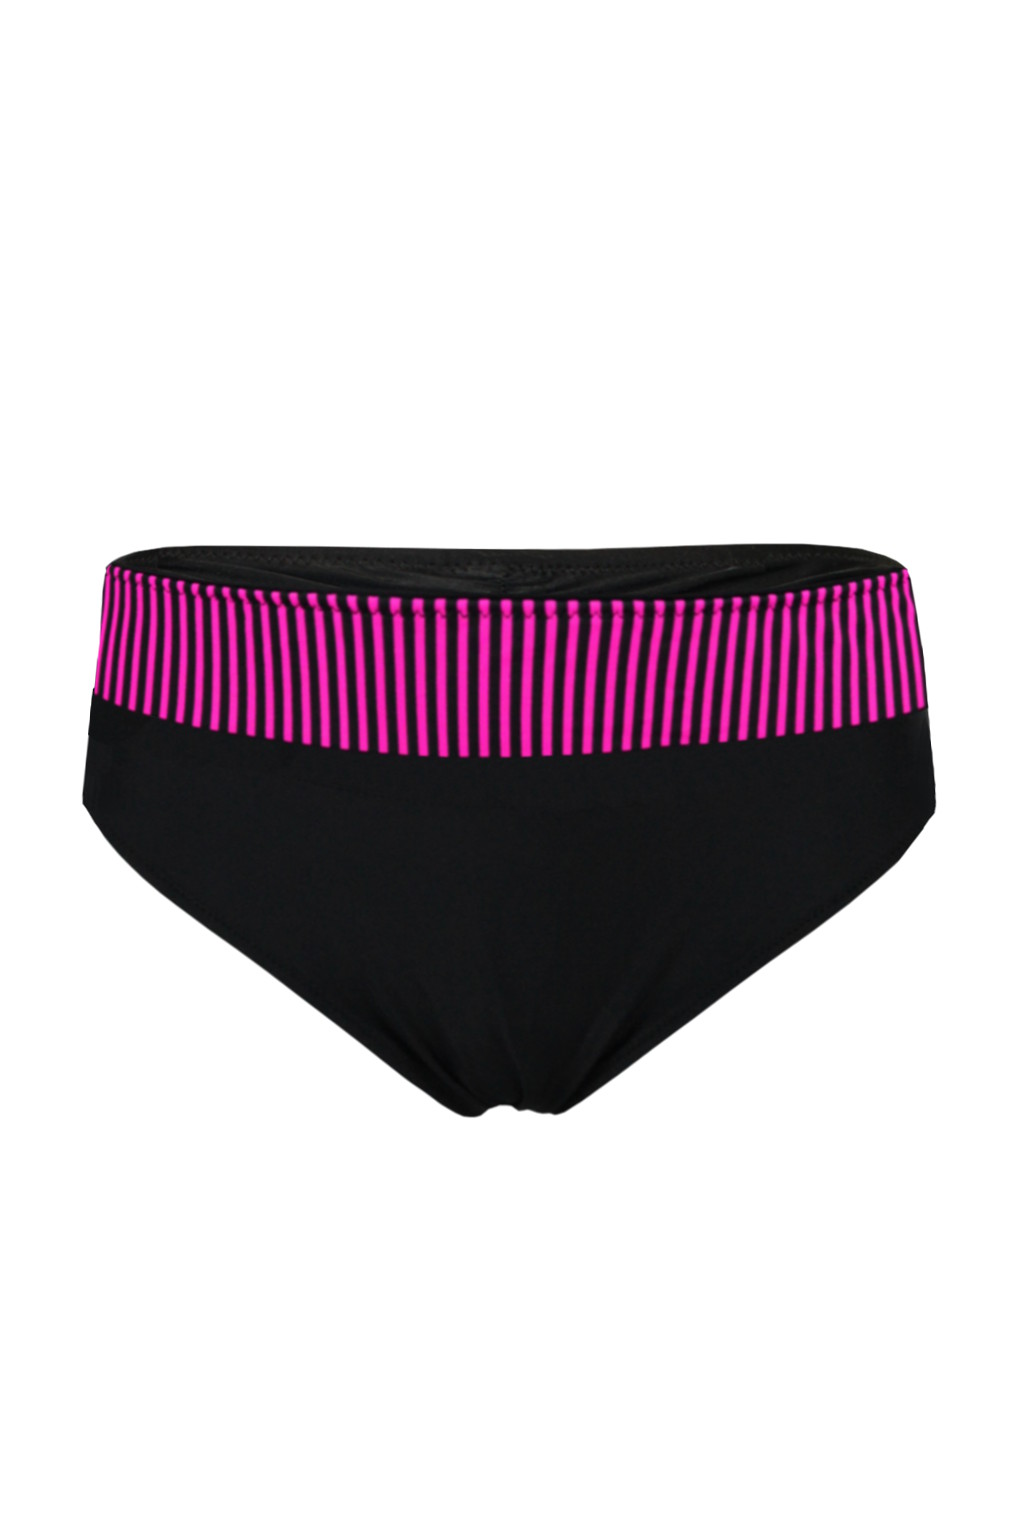 Rafaella Pink plavky spodní díl S798 3XL tmavě růžová